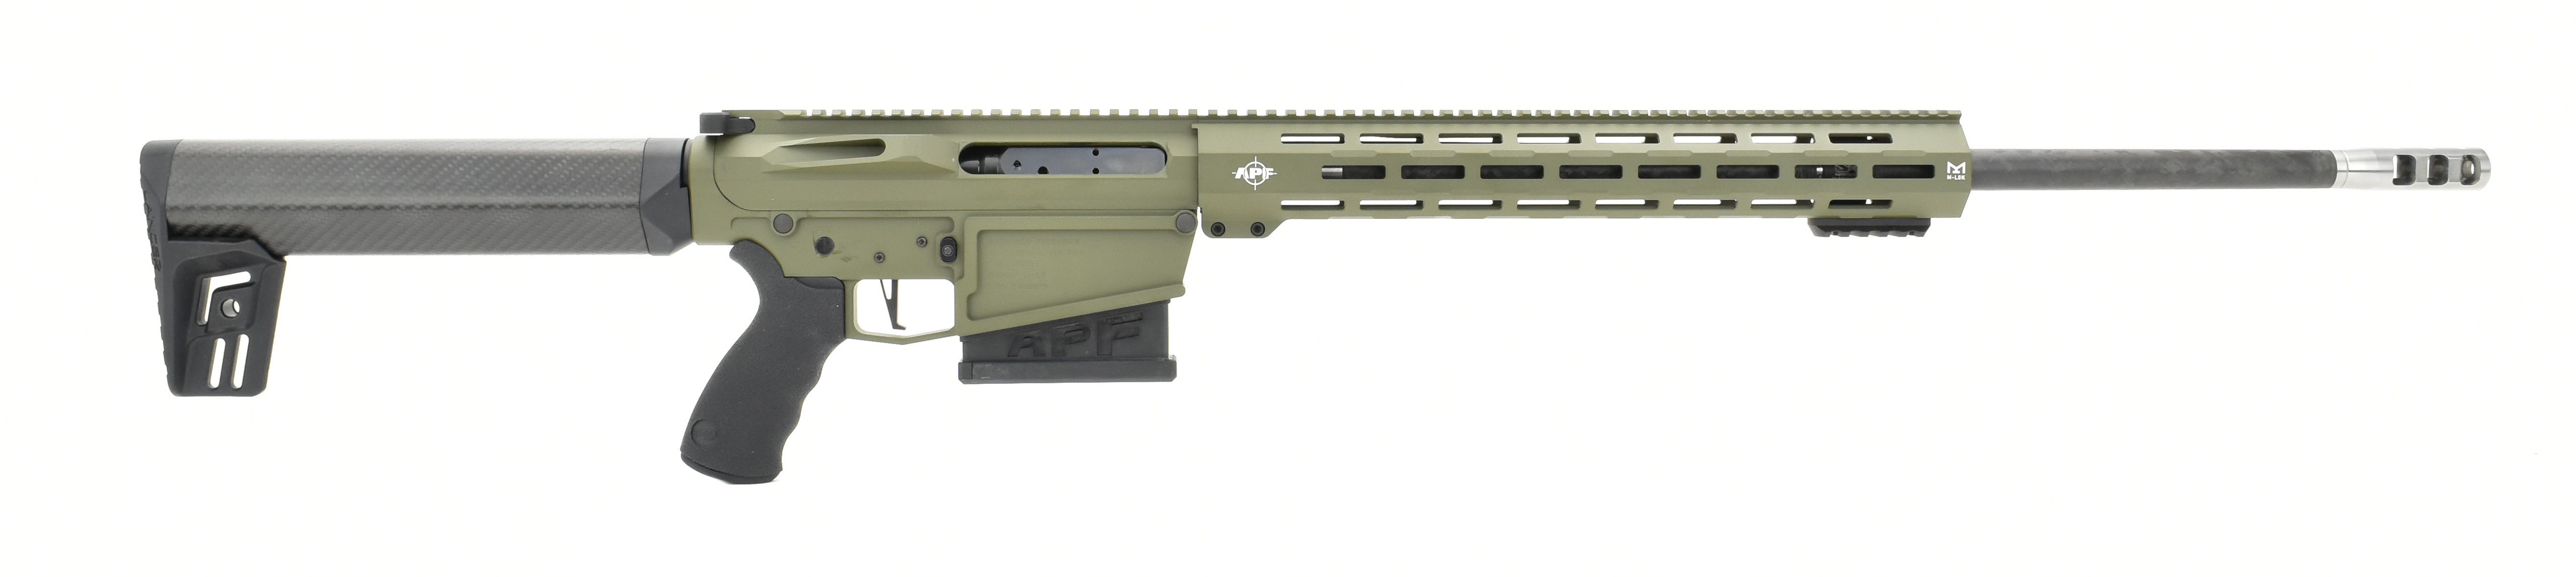 Alex Pro Firearms M-LR 7mm Magnum caliber rifle for sale.